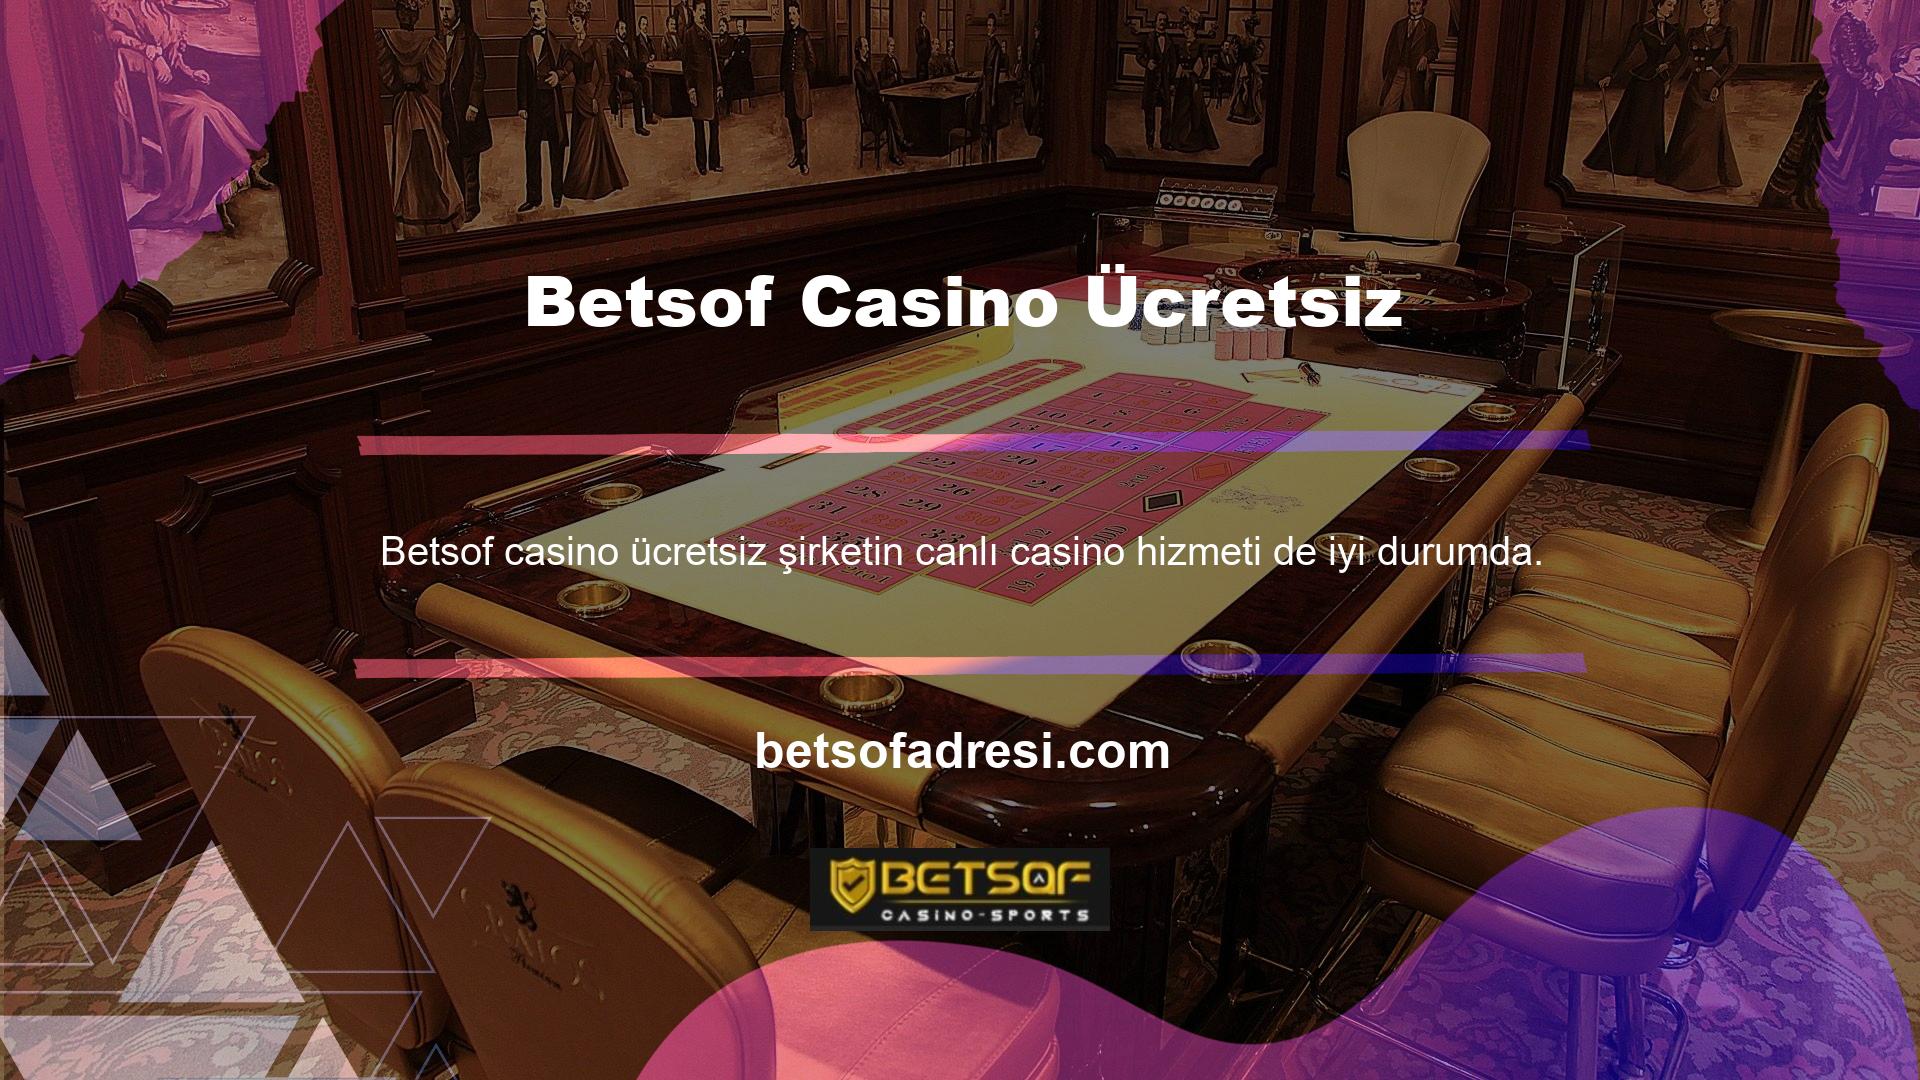 Betsof Casino Ücretsiz Şikayetler kategorisinde tanımlanan Canlı Casino butonuna tıkladığınızda açılacak oyunların tam listesini göreceksiniz